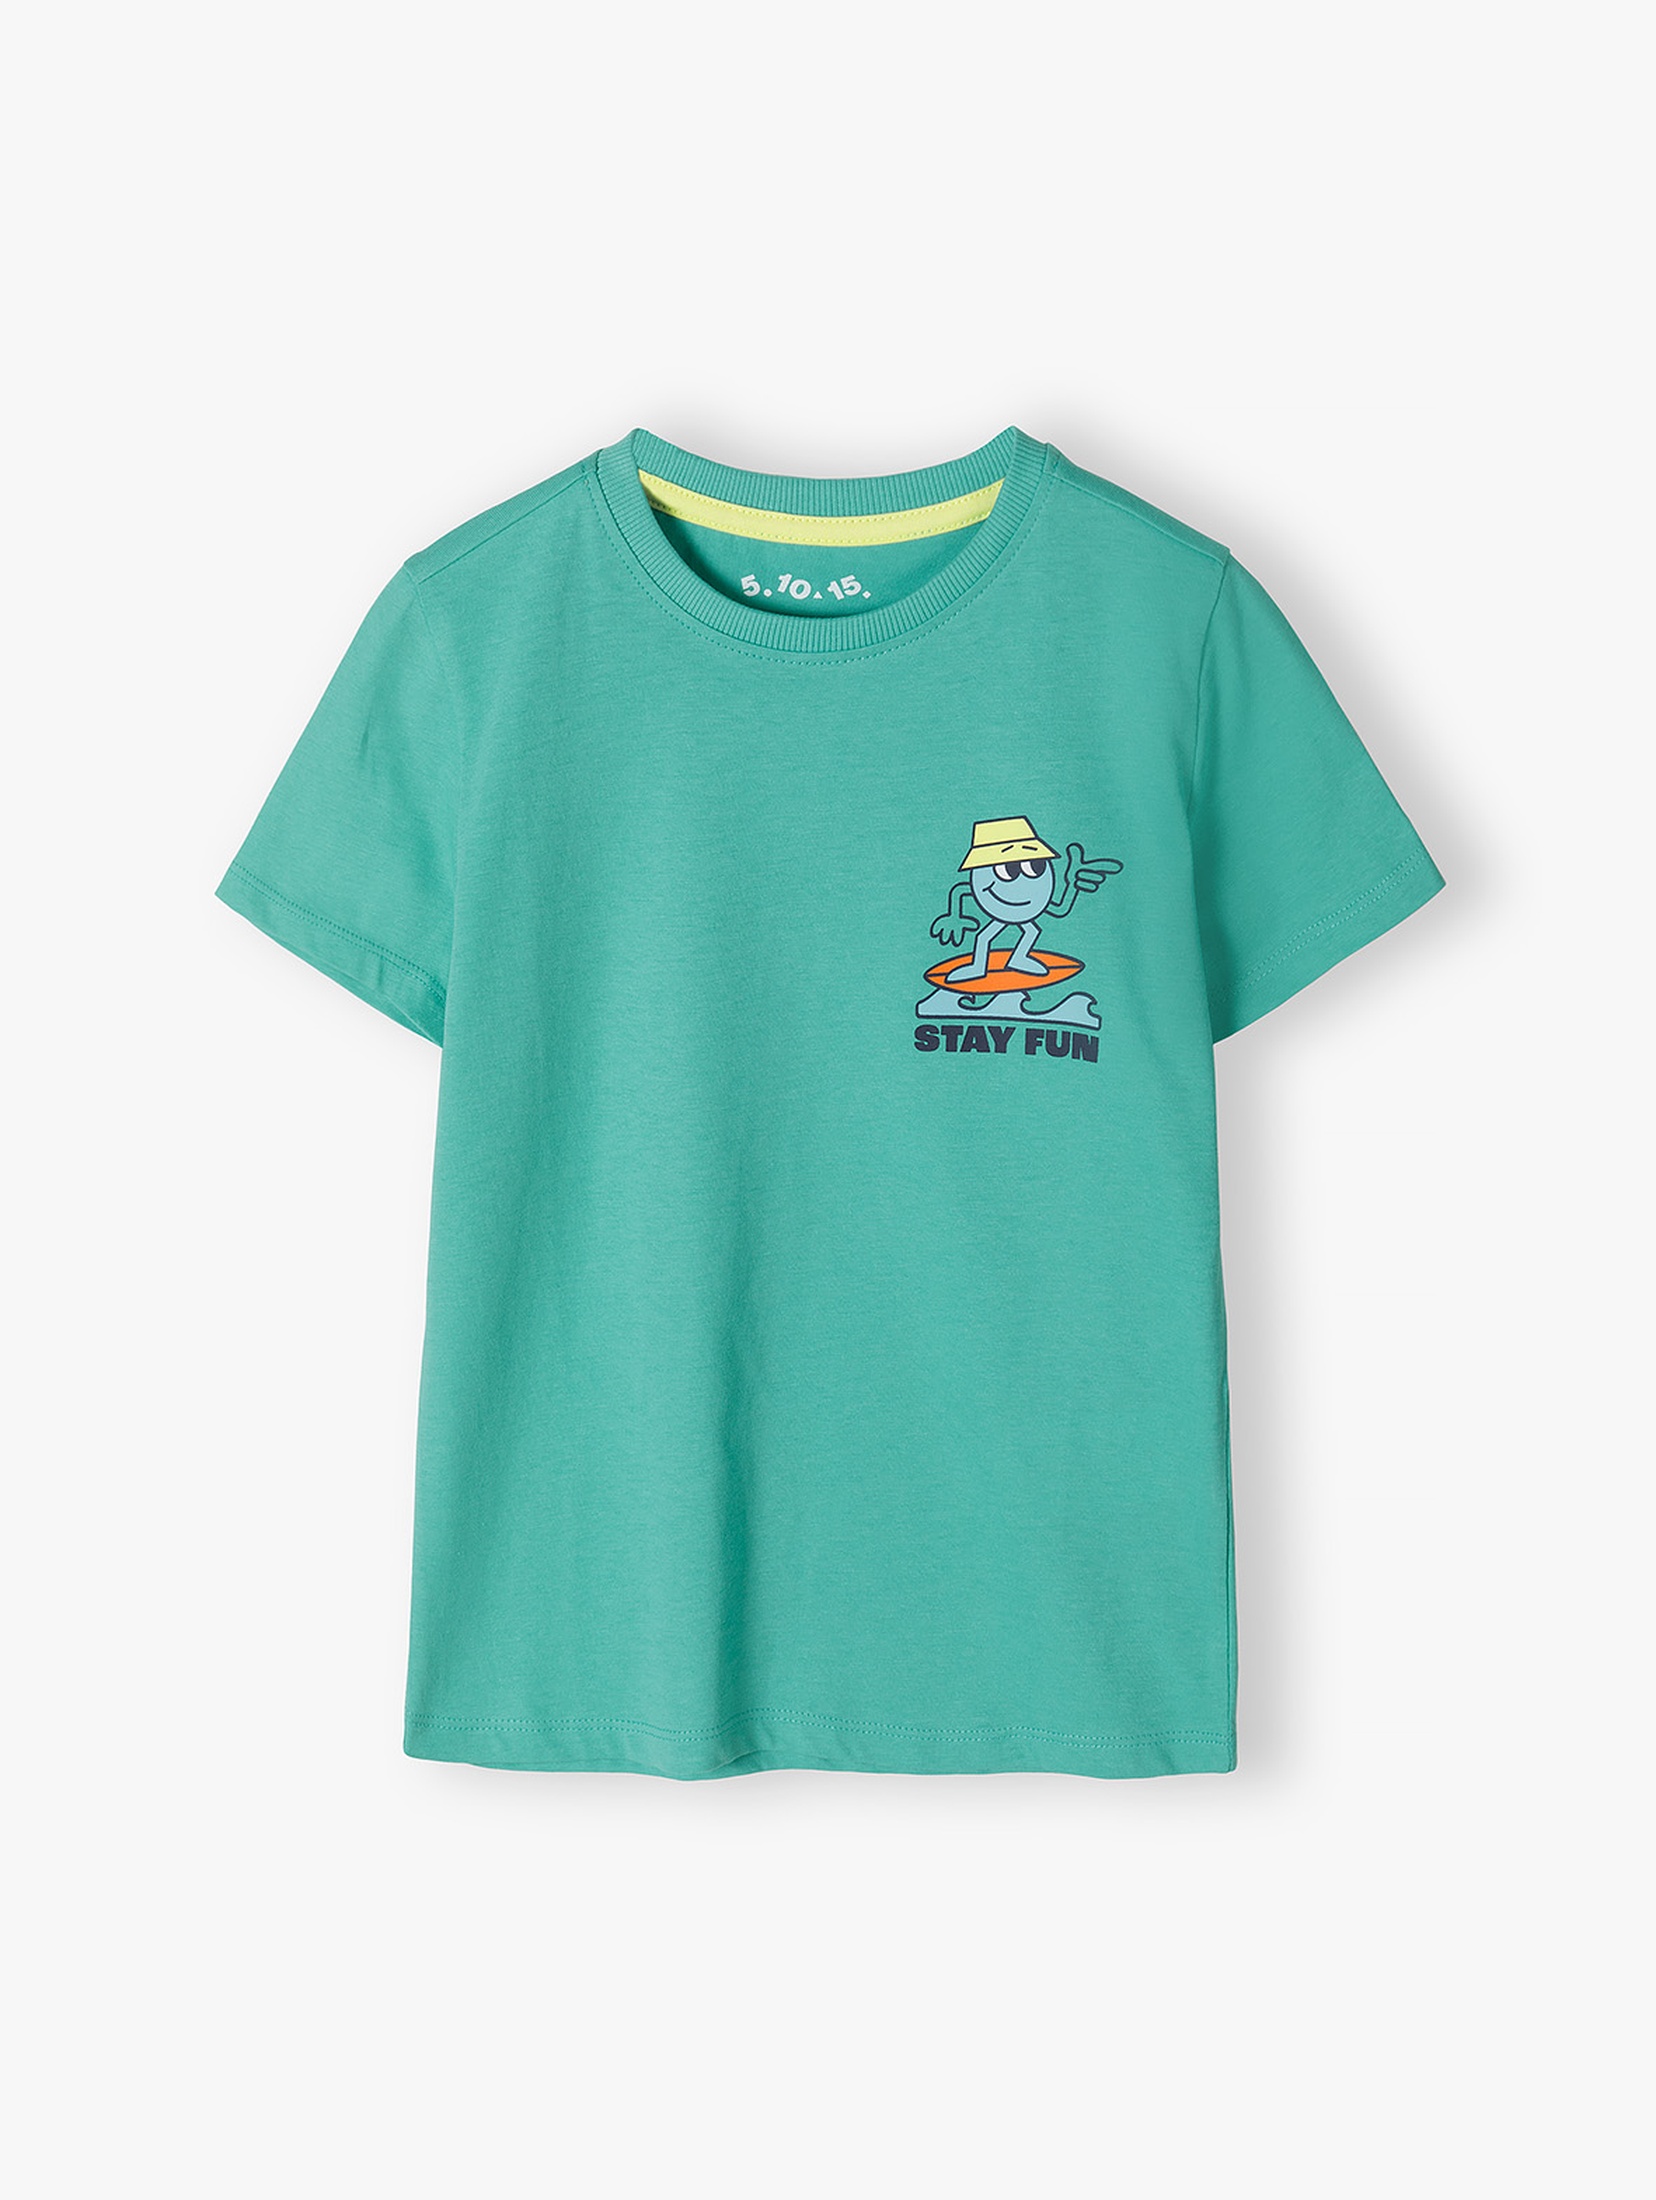 Zielony t-shirt dla chłopca bawełniany z nadrukiem